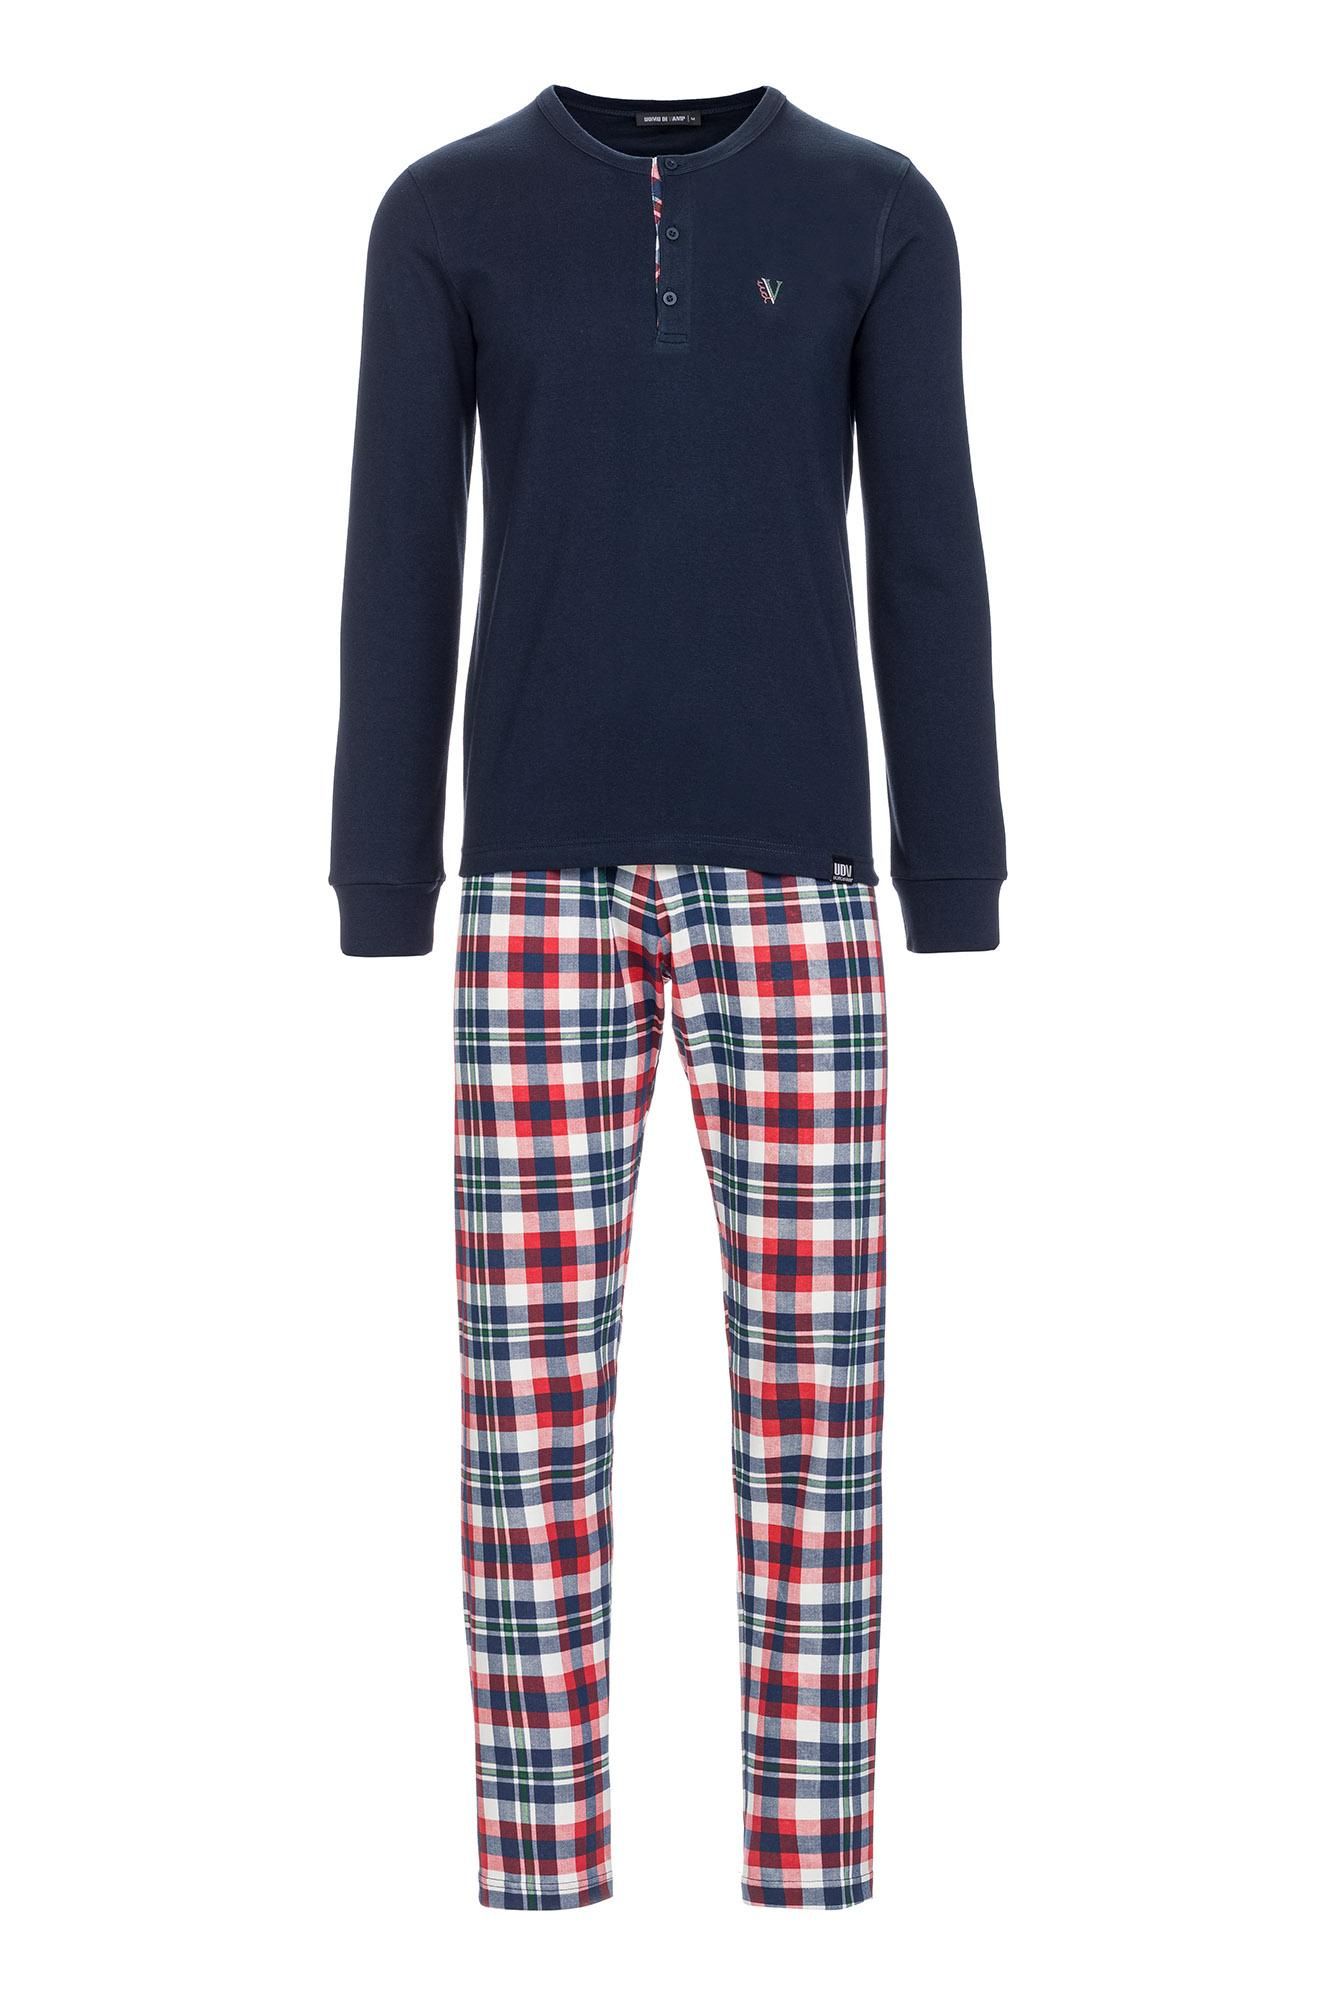 Men’s Cotton Pyjamas with Button Placket